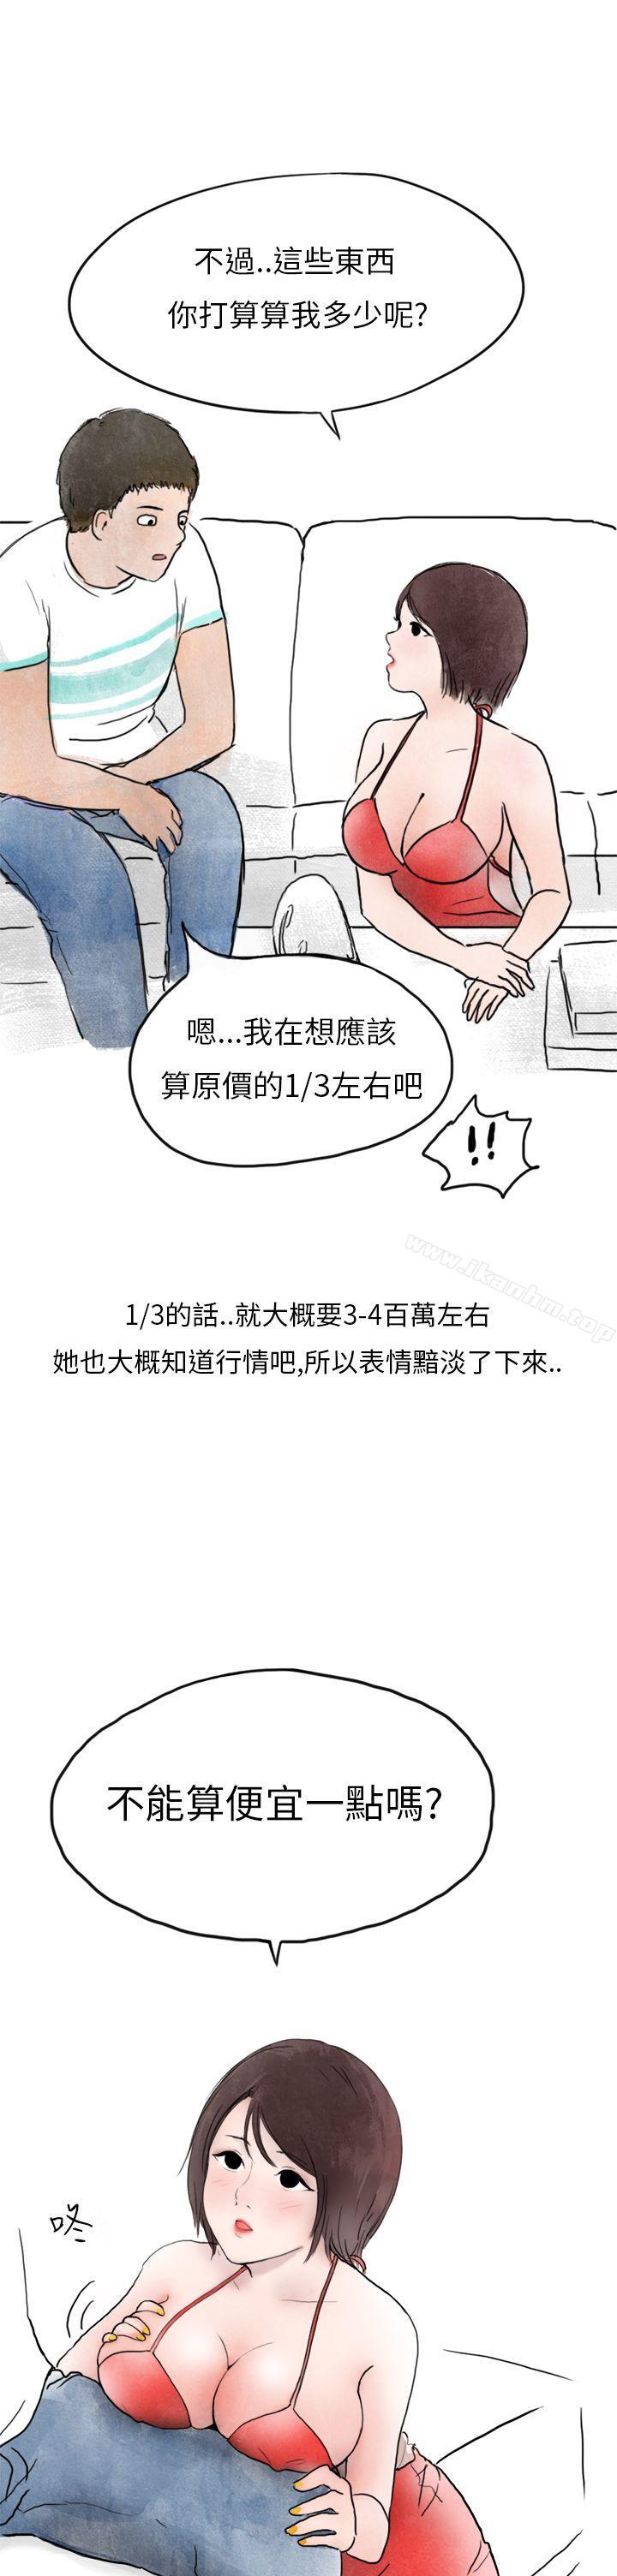 漫画韩国 秘密Story第二季   - 立即阅读 第二季 在拍賣網站上認識的女人(下)第34漫画图片